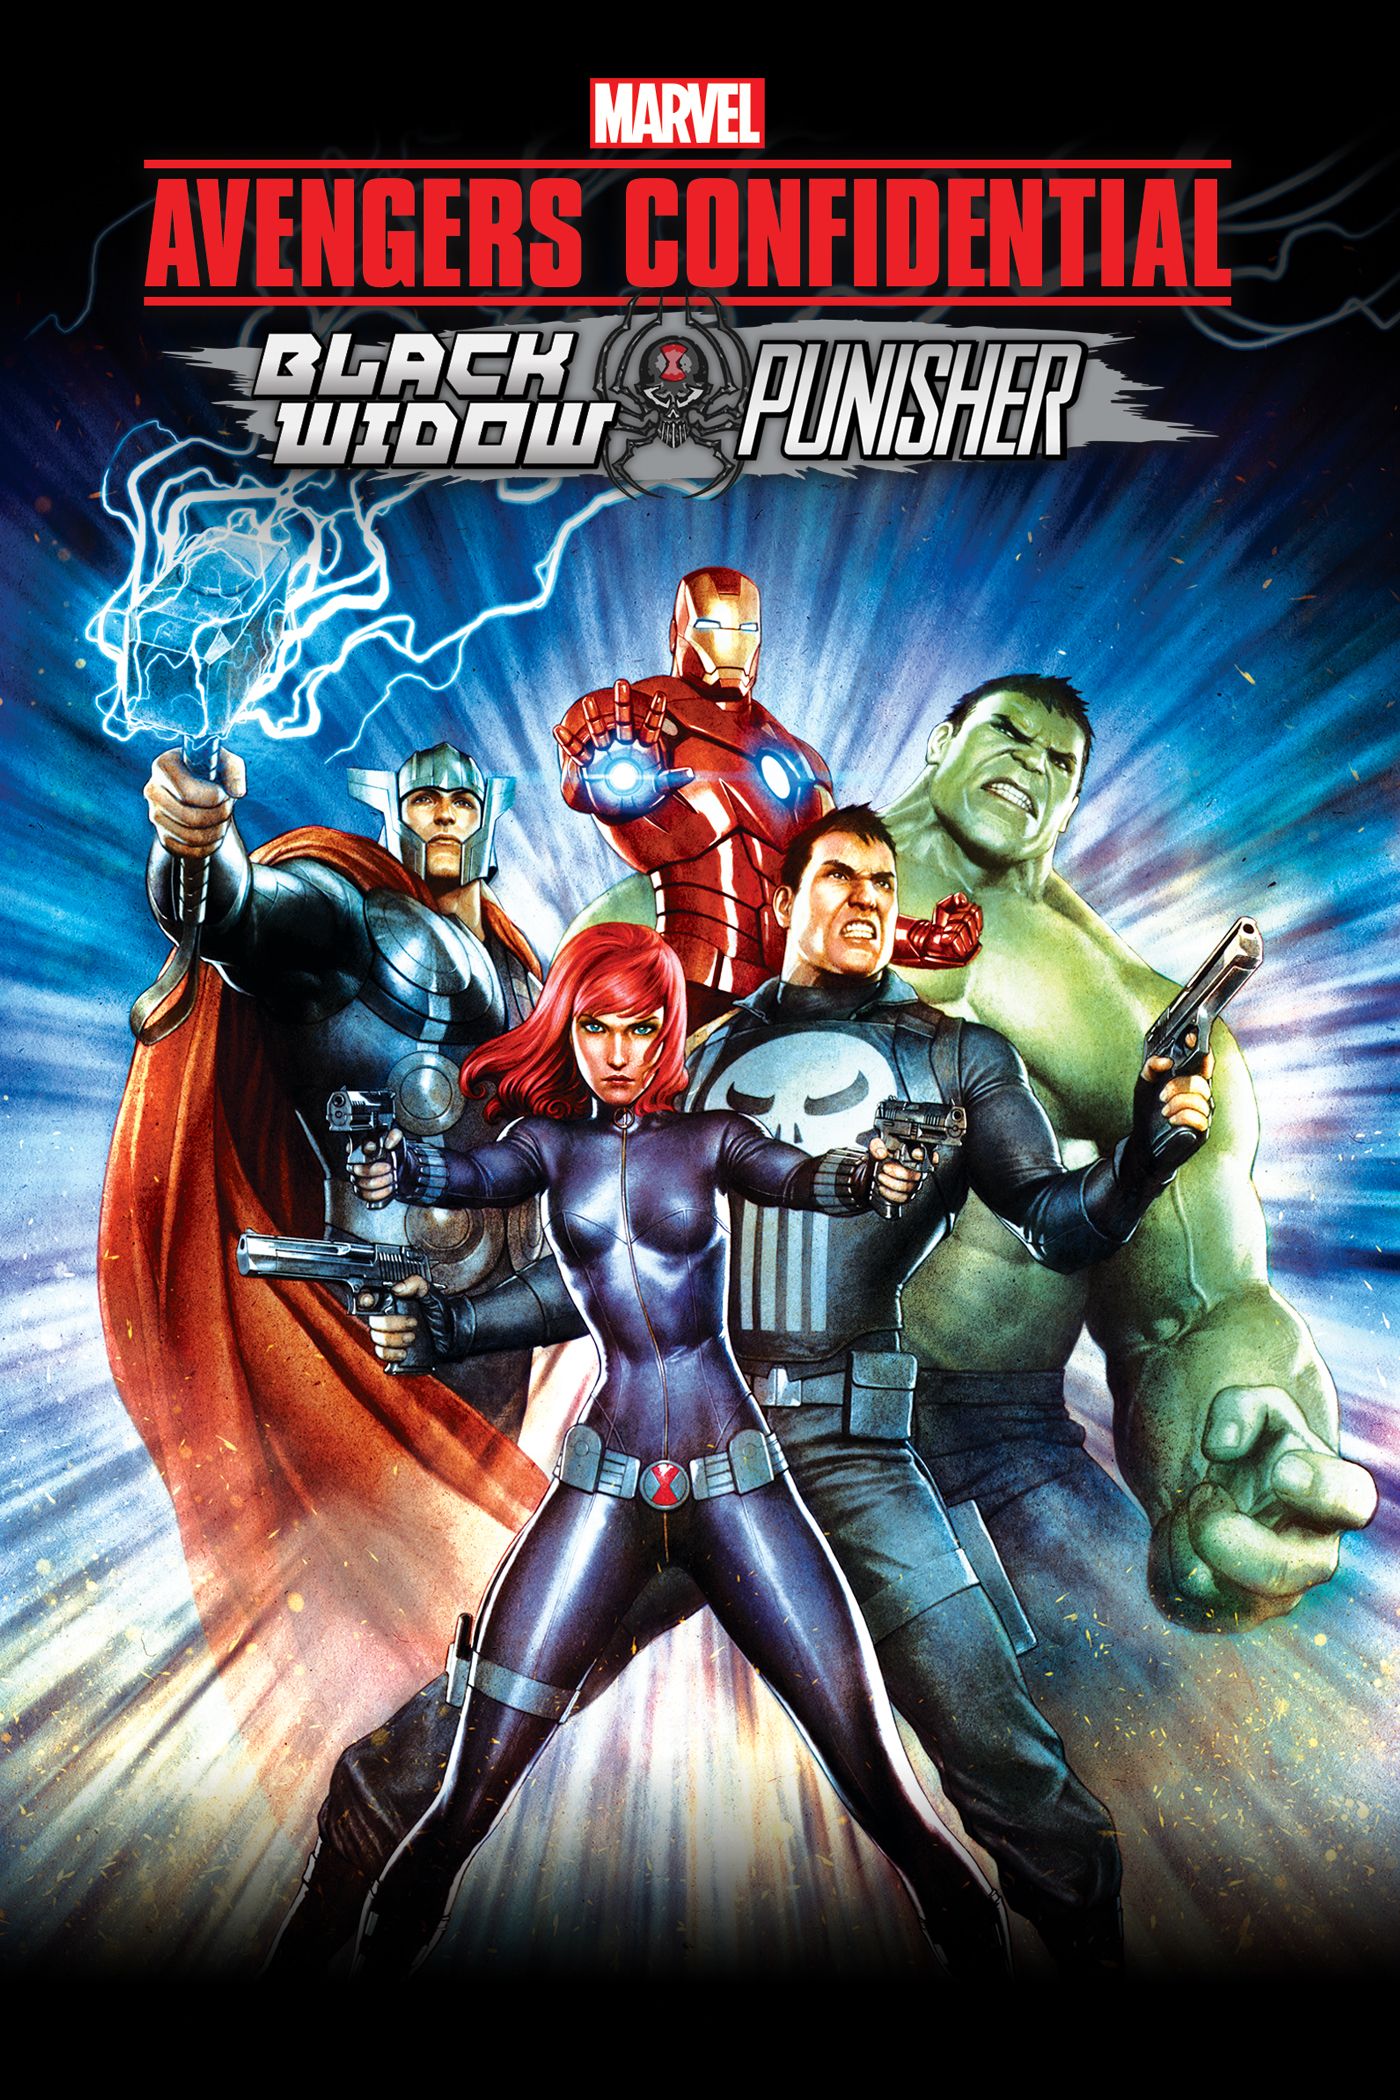 ดูหนังออนไลน์ฟรี Avengers Confidential- Black Widow & Punisher ขบวนการ อเวนเจอร์ส – แบล็ควิโดว์ กับ พันนิชเชอร์ (2014)